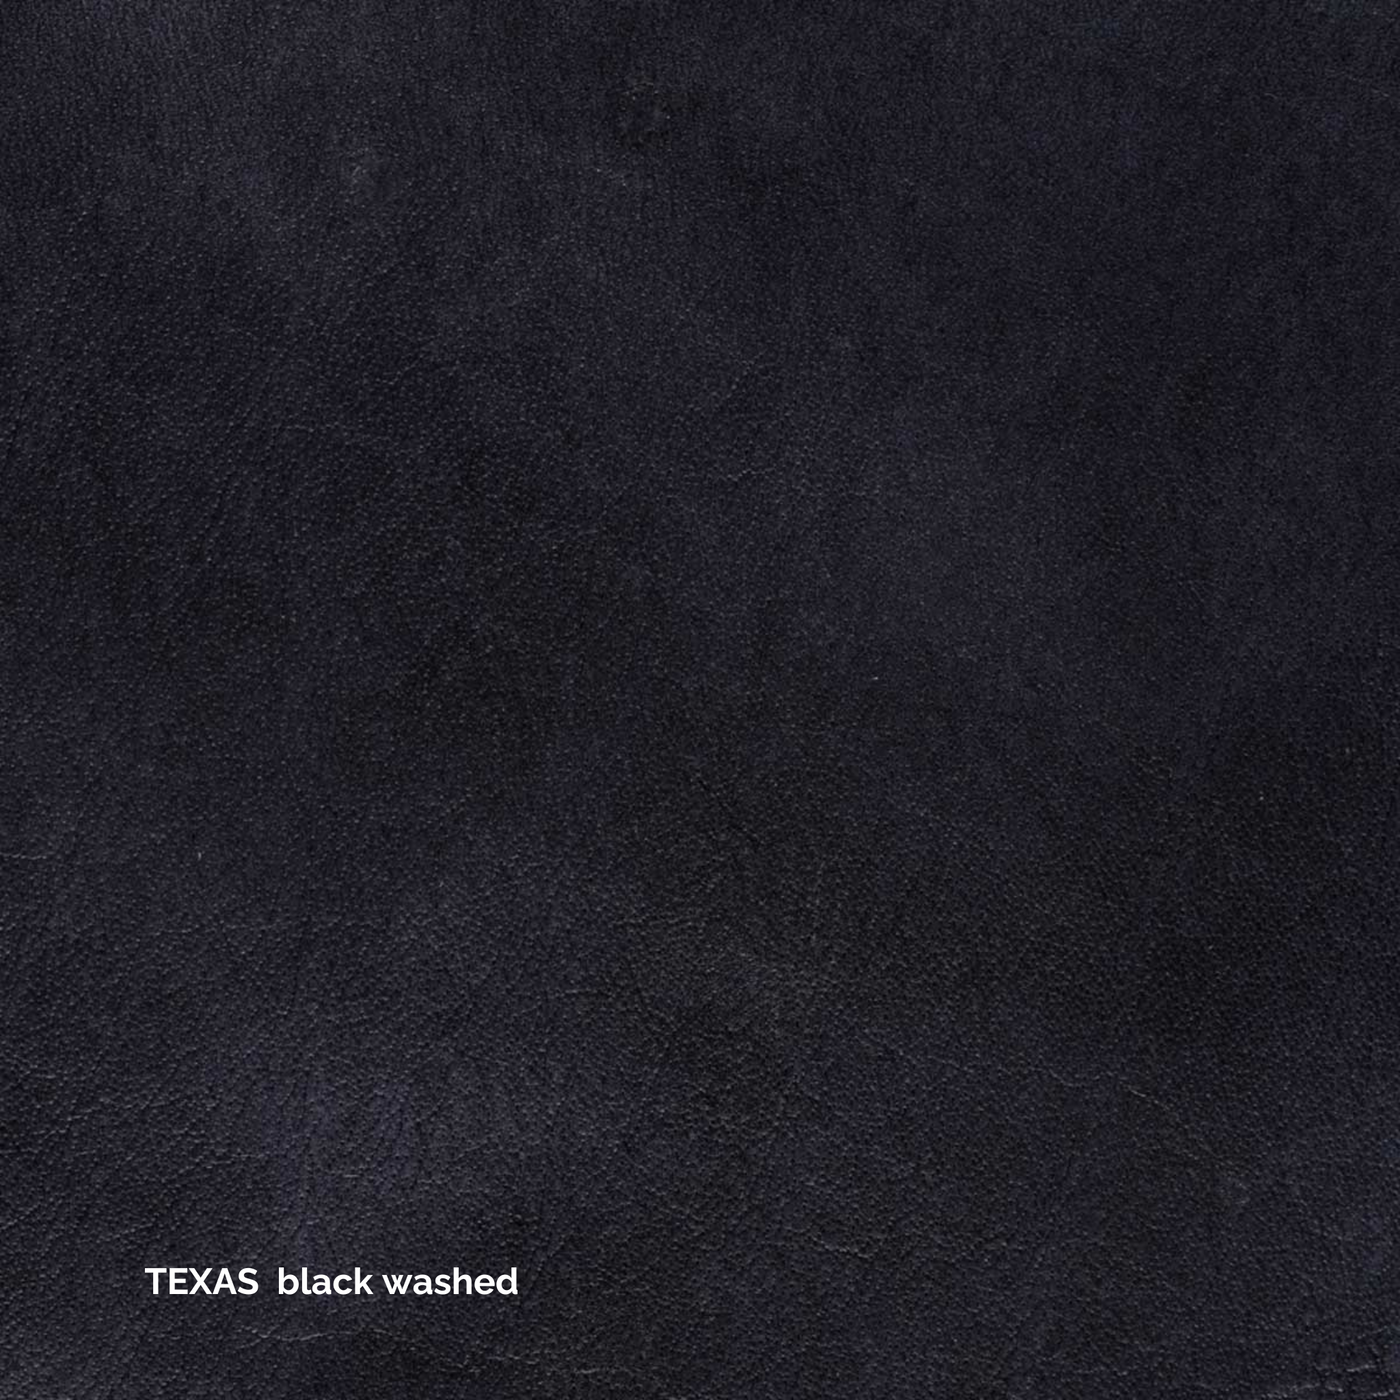 Ole Stuhl - Leder Texas Black Washed